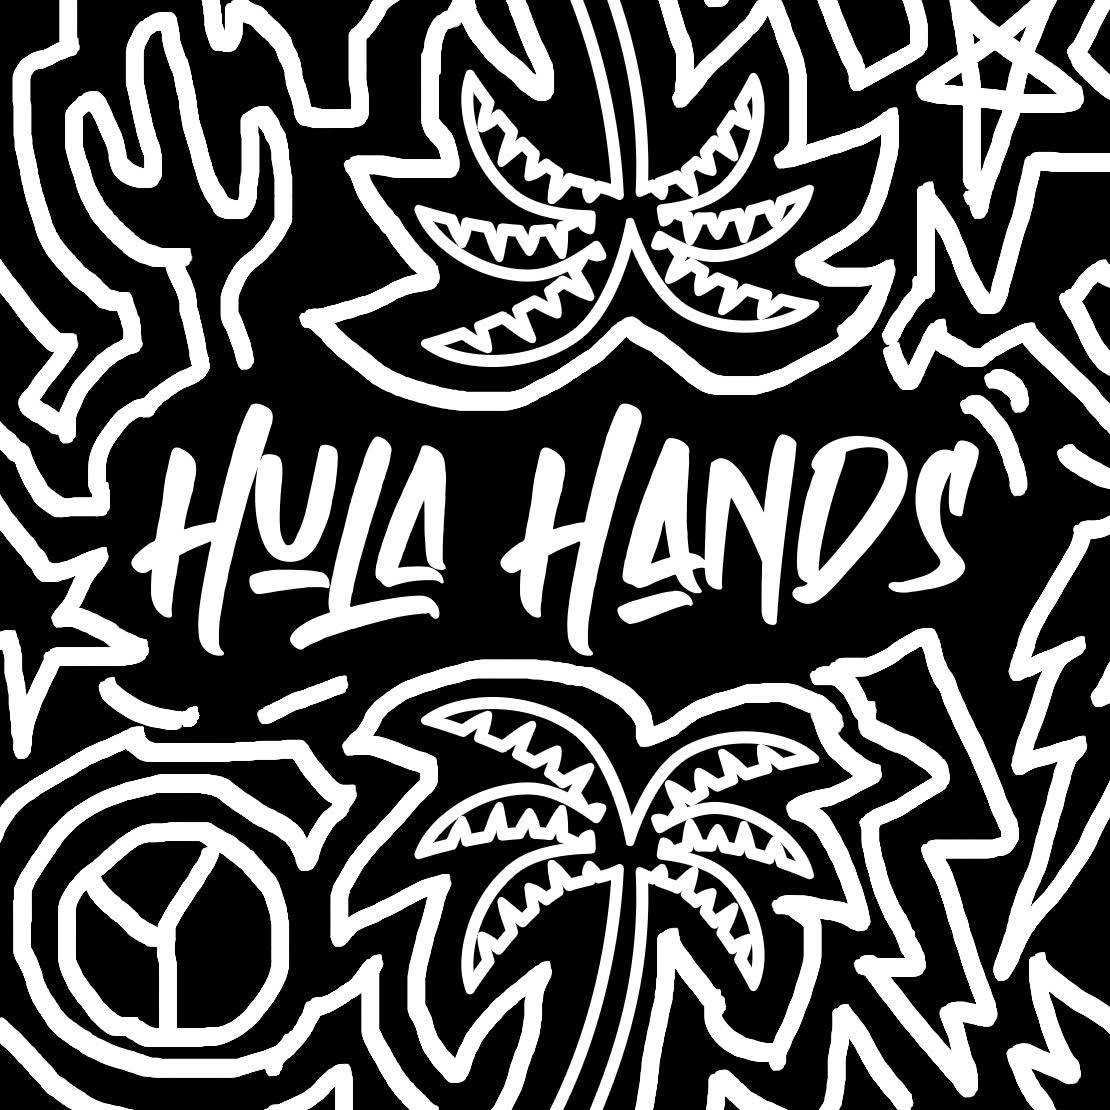 Hula Hands album cover 1